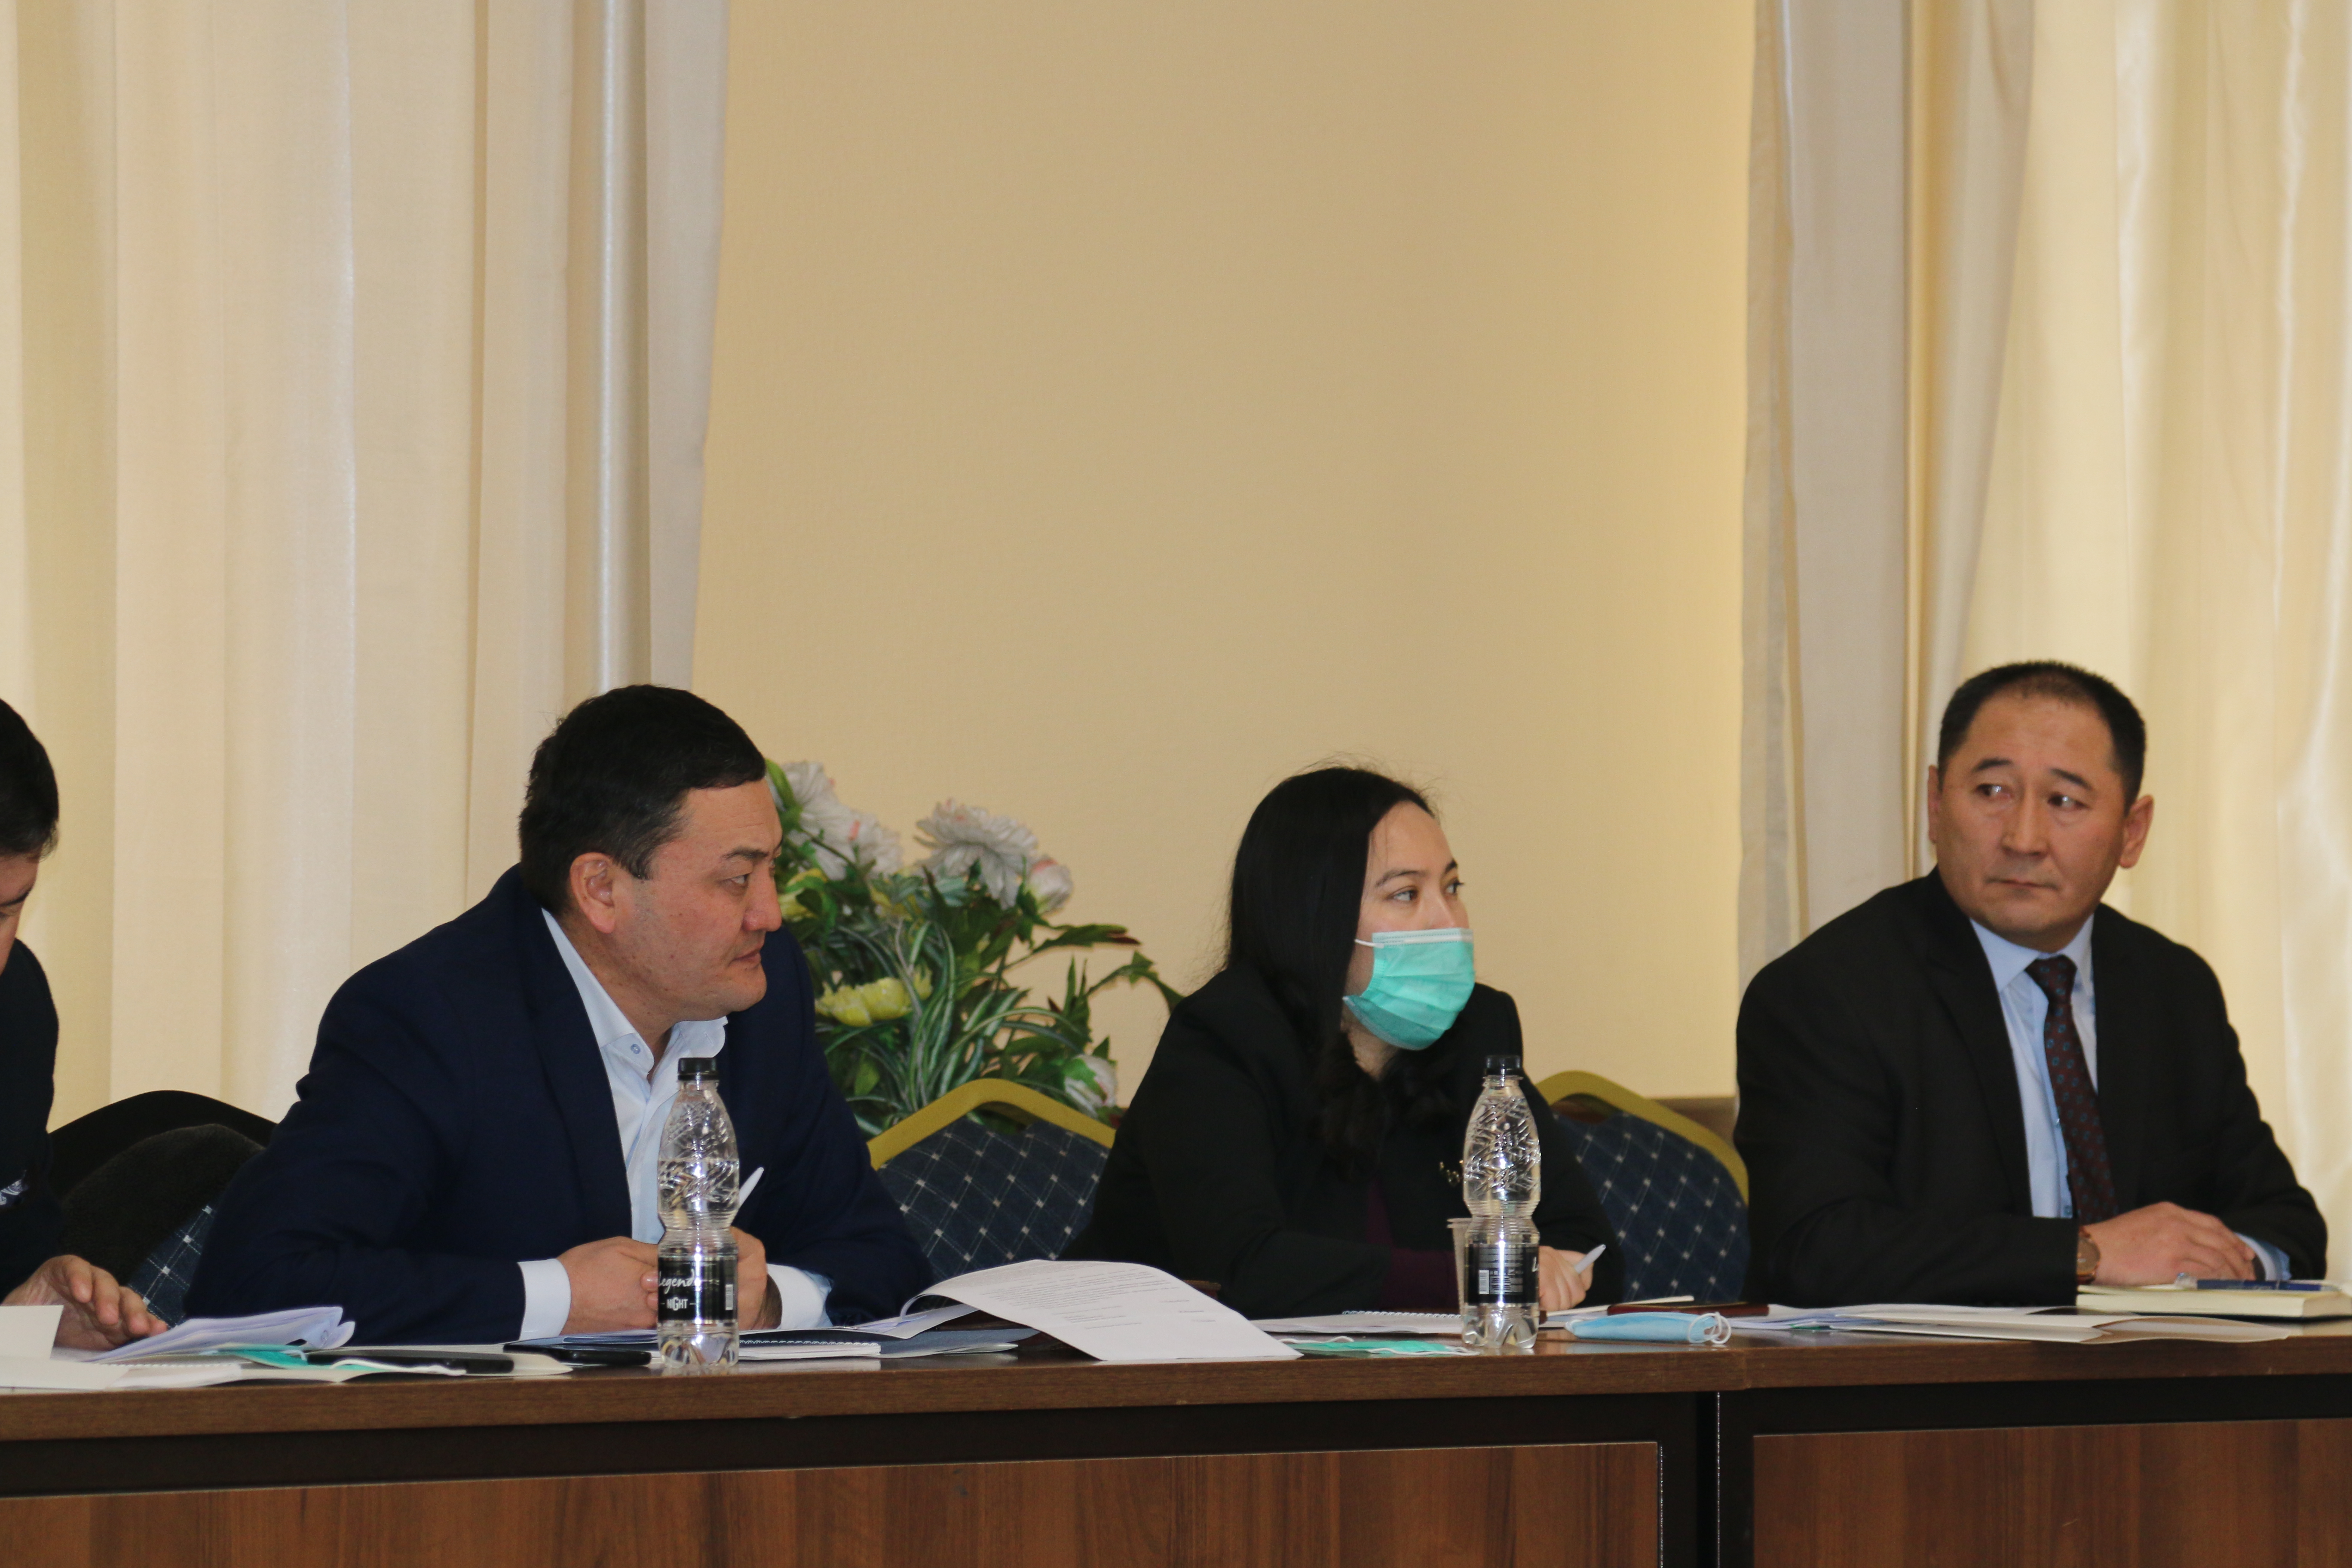 Состоялась рабочая встреча по обсуждению проблем, связанных с расследованием заявлений и сообщений о применении пыток в Кыргызской Республике